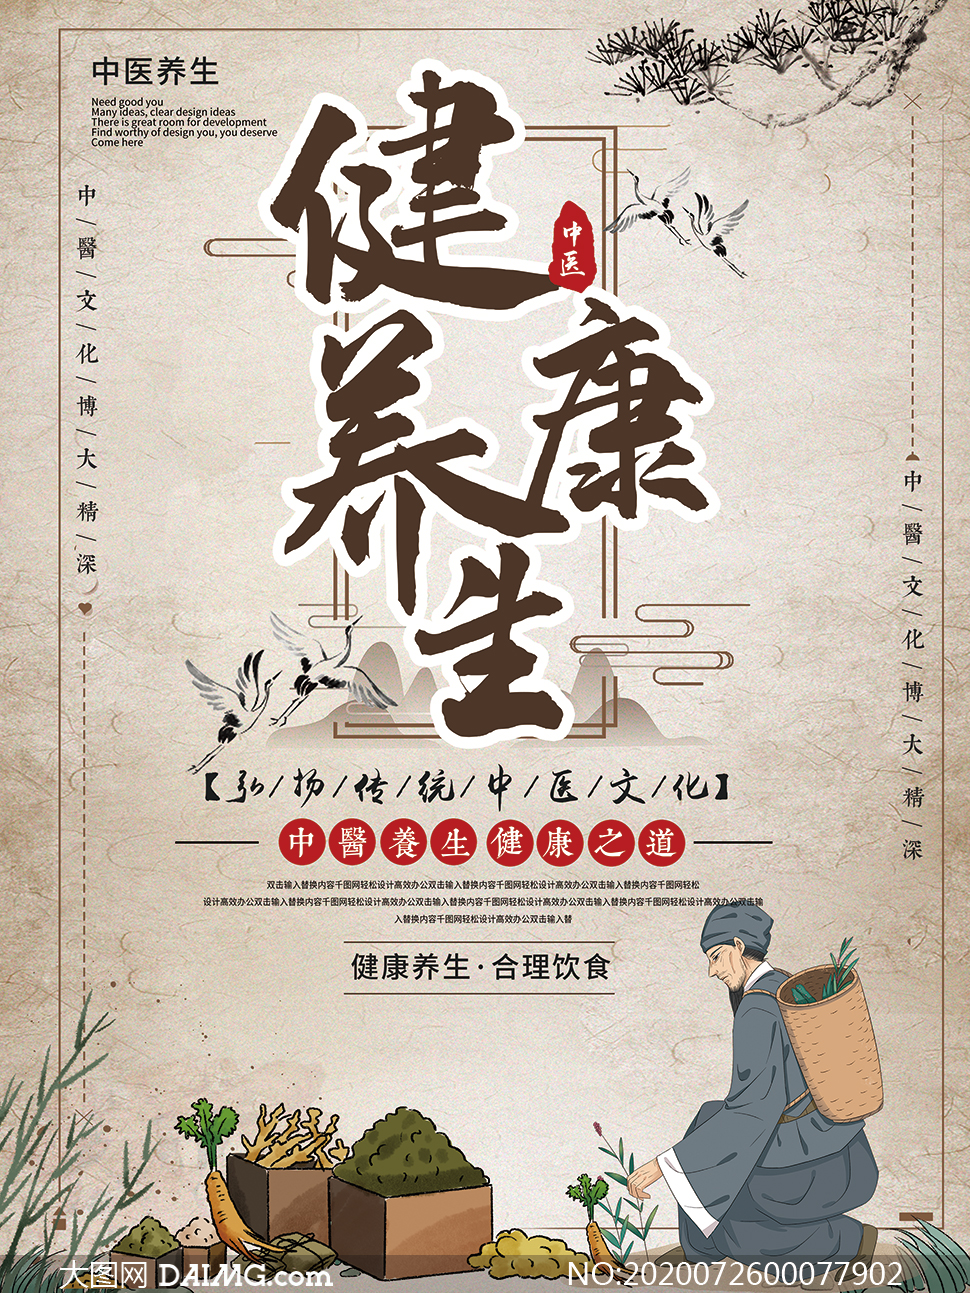 中国风中医养生文化宣传海报psd素材